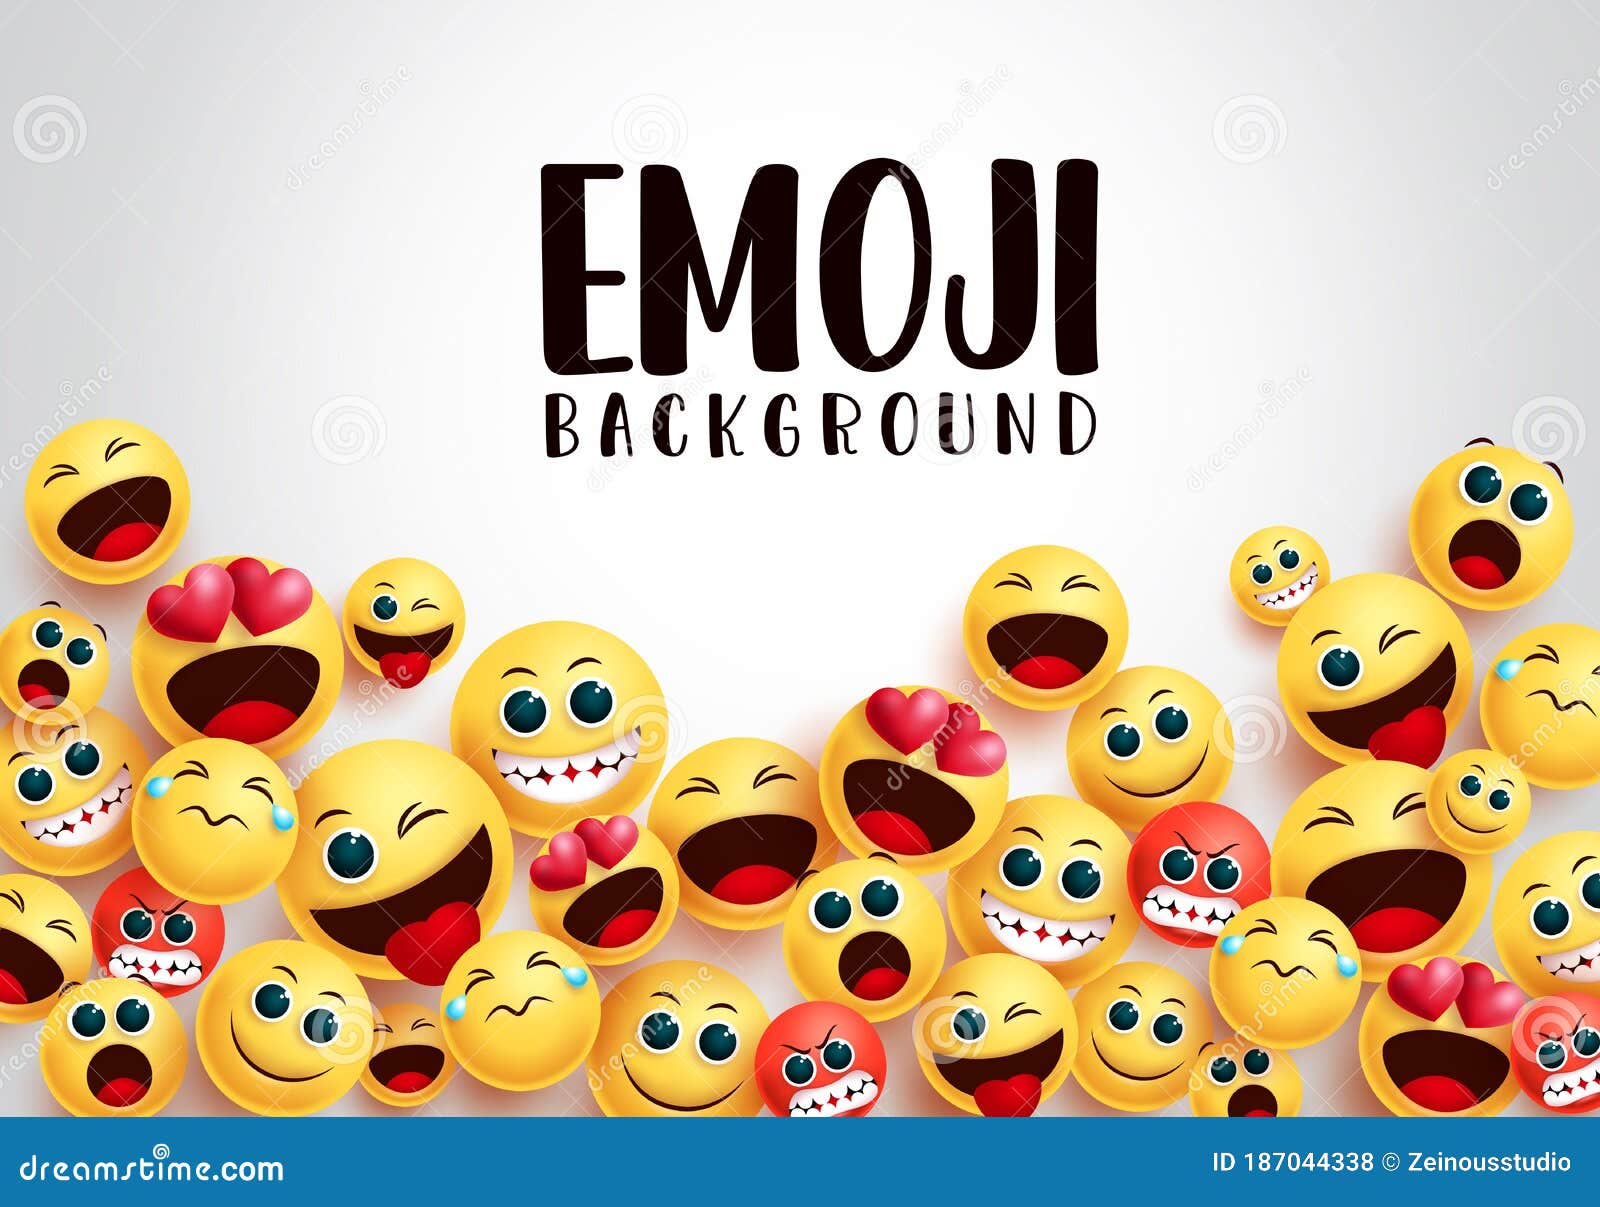 Hãy tận hưởng mẫu vector nền Emoji cười đáng yêu của chúng tôi. Sự tươi vui và sống động của những hình ảnh này sẽ đem lại cho bạn những trải nghiệm không thể quên trong cuộc sống.